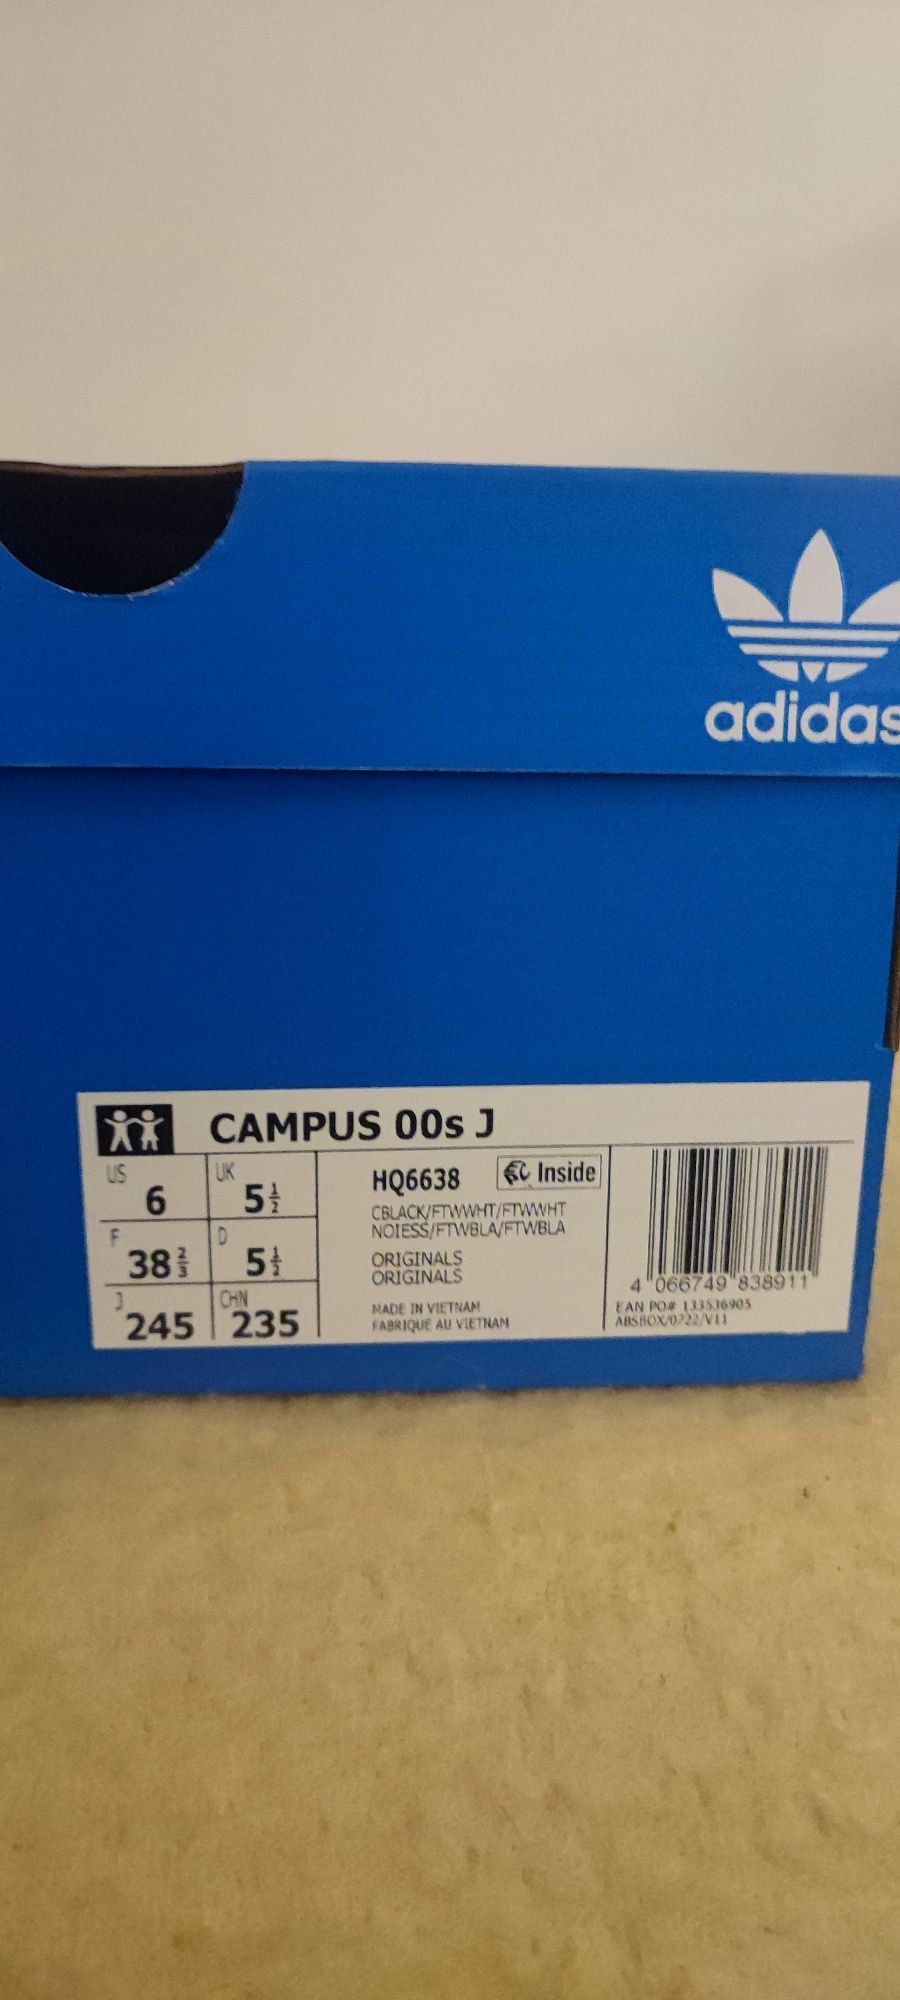 Adidas Campus 00s J